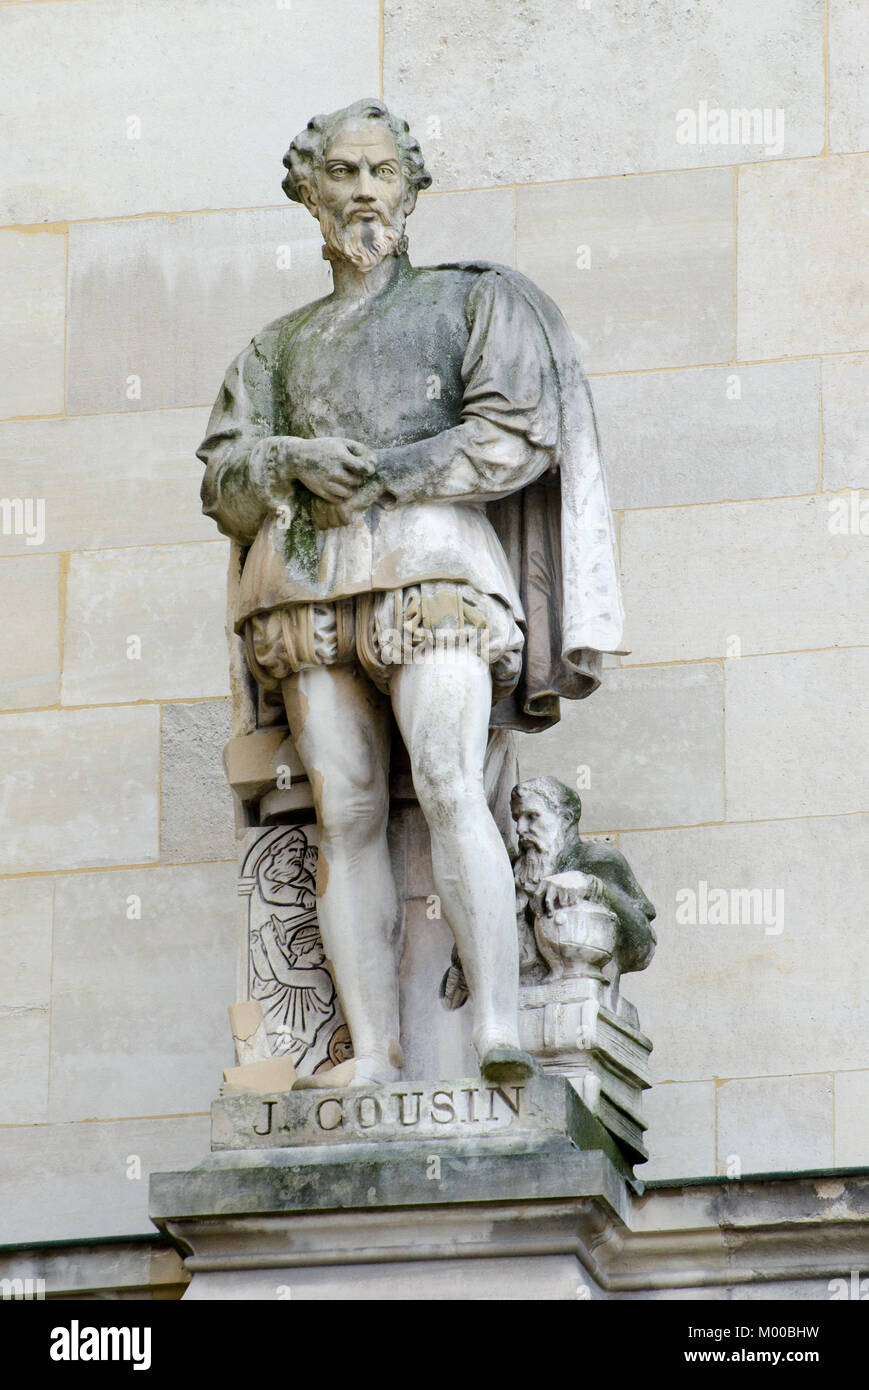 París, Francia. Palais du Louvre. Estatua en el Cour Napoleon: Jean Cousin el viejo (C1500-1560) Francés pintor, escultor, grabador, grabador y geome Foto de stock